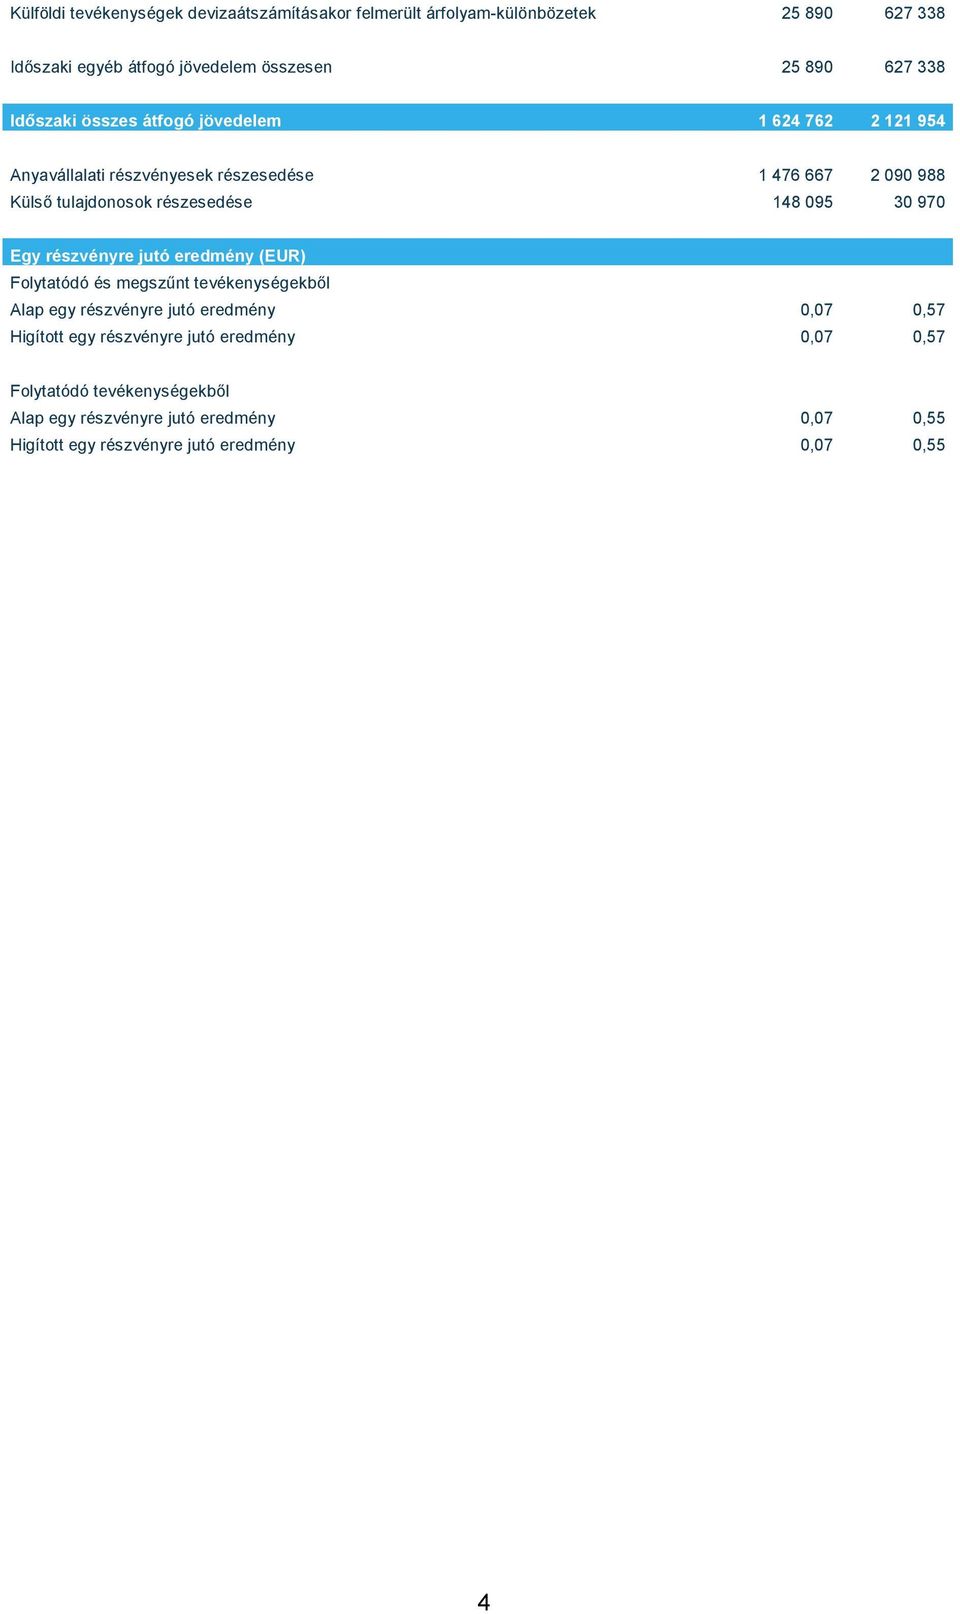 095 30 970 Egy részvényre jutó eredmény (EUR) Folytatódó és megszűnt tevékenységekből Alap egy részvényre jutó eredmény 0,07 0,57 Higított egy